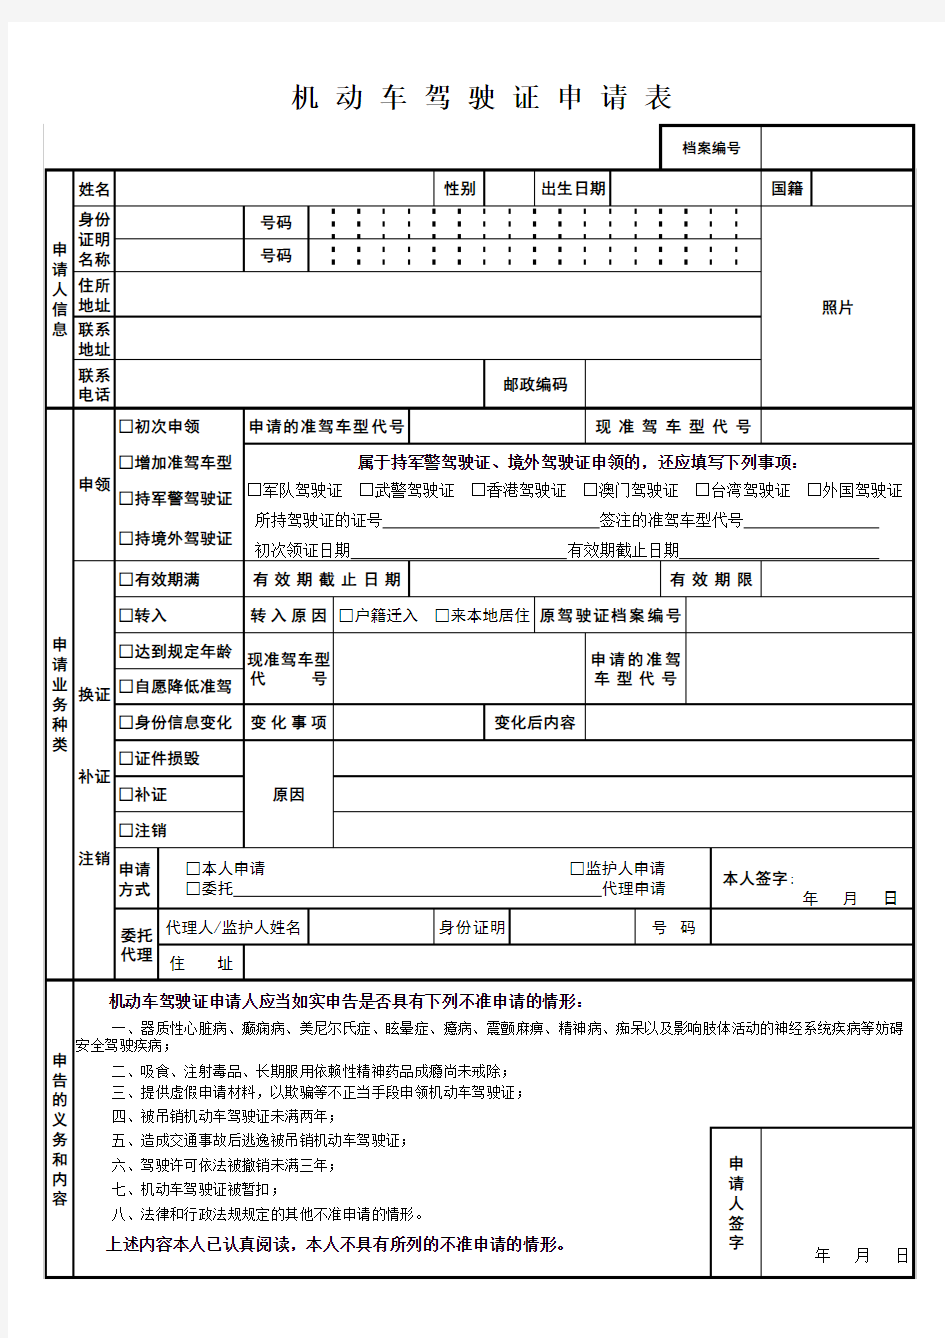 机动车驾驶证申请表(表格)